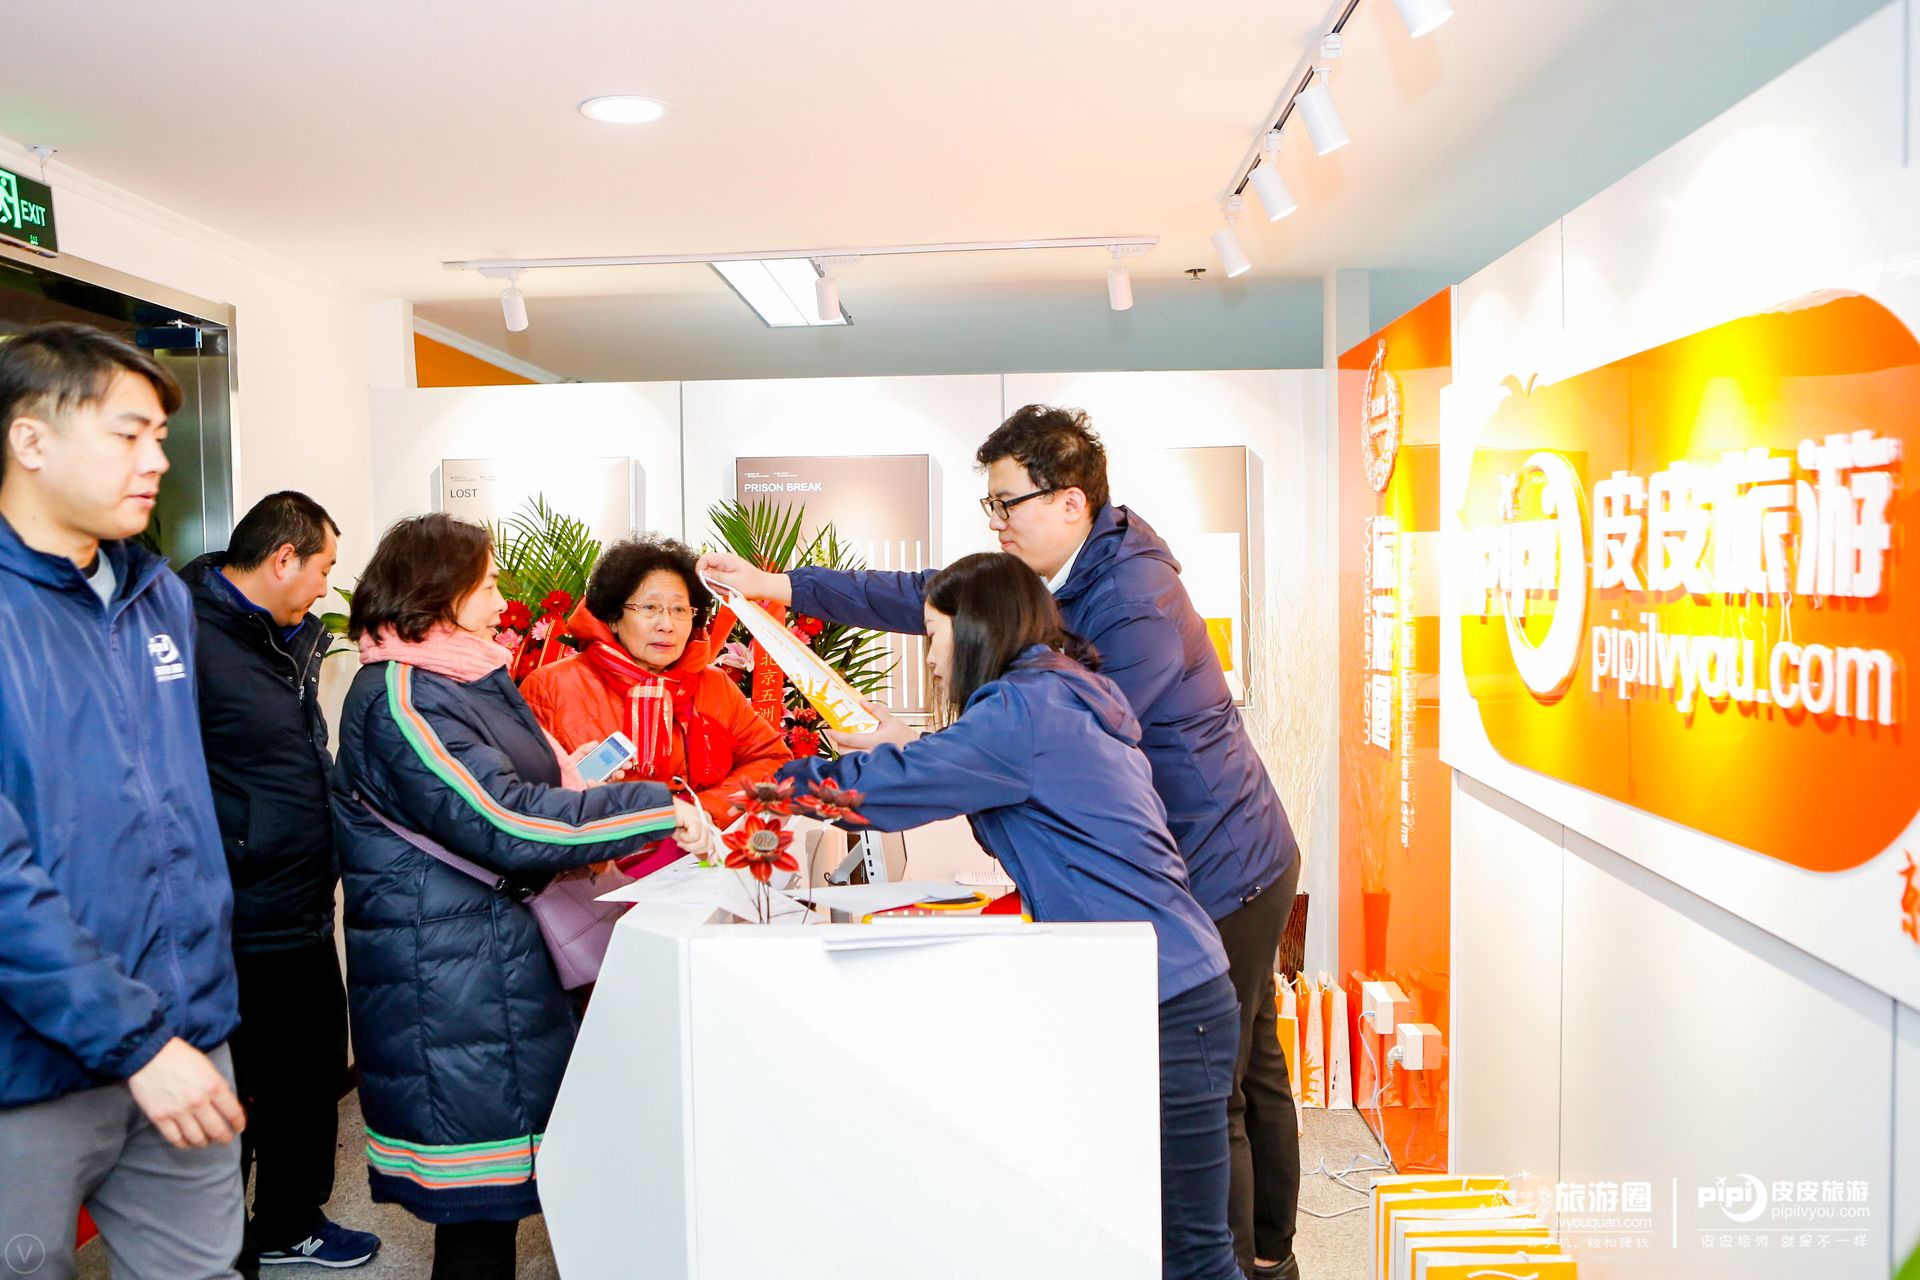 皮皮旅游北京顾问中心盛大开业,竖立旅游新零